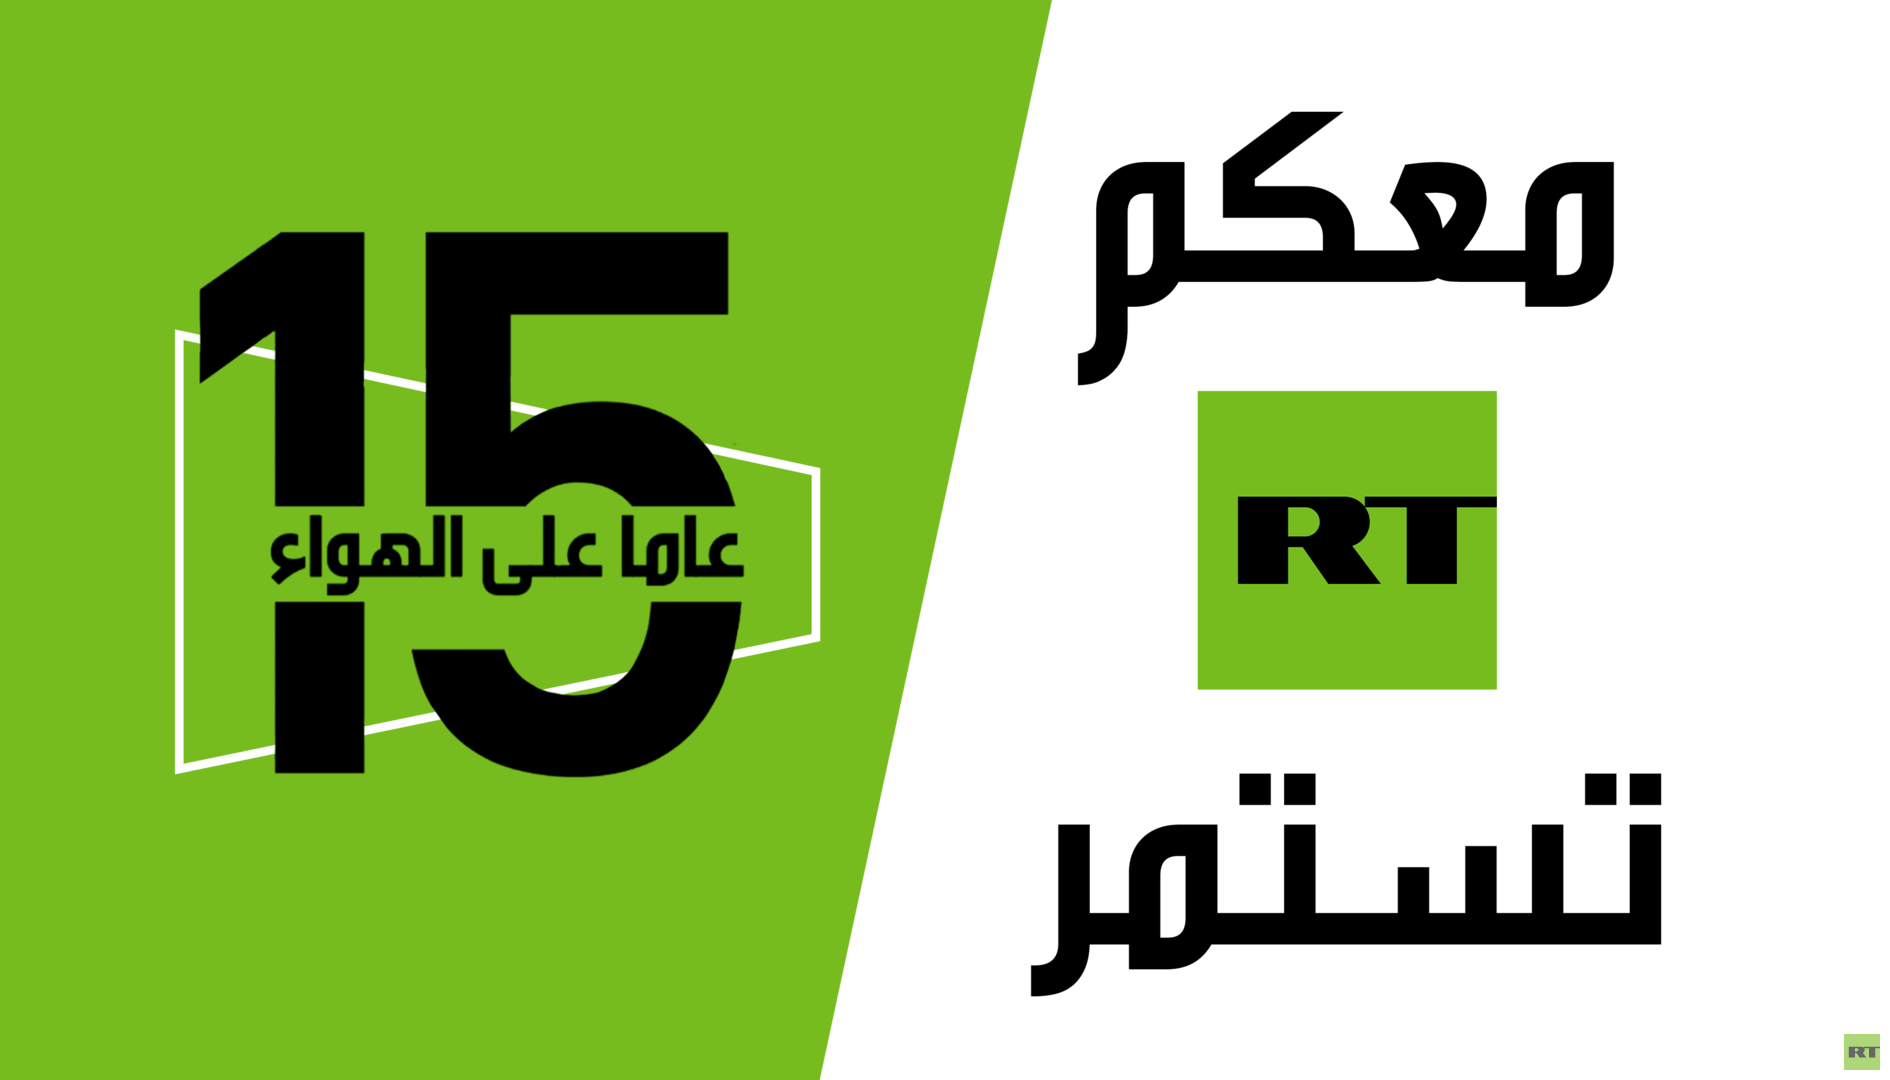 الذكرى الخامسة عشرة لانطلاق قناة RT التلفزيونية الناطقة بالعربية